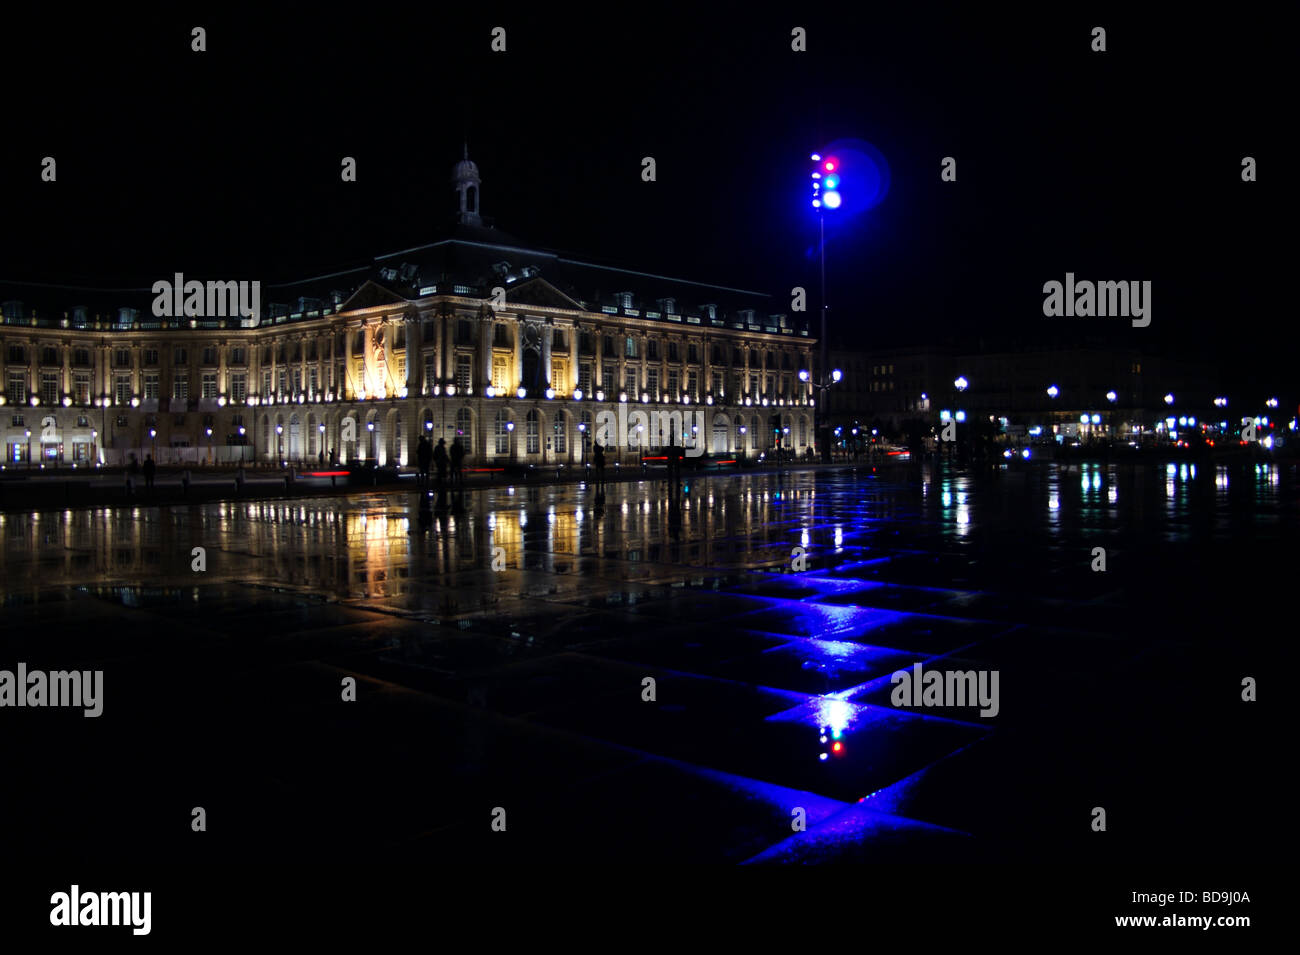 Miroir d'eau (water mirror), night, Place de la Bourse, Bordeaux, Gironde, France Stock Photo